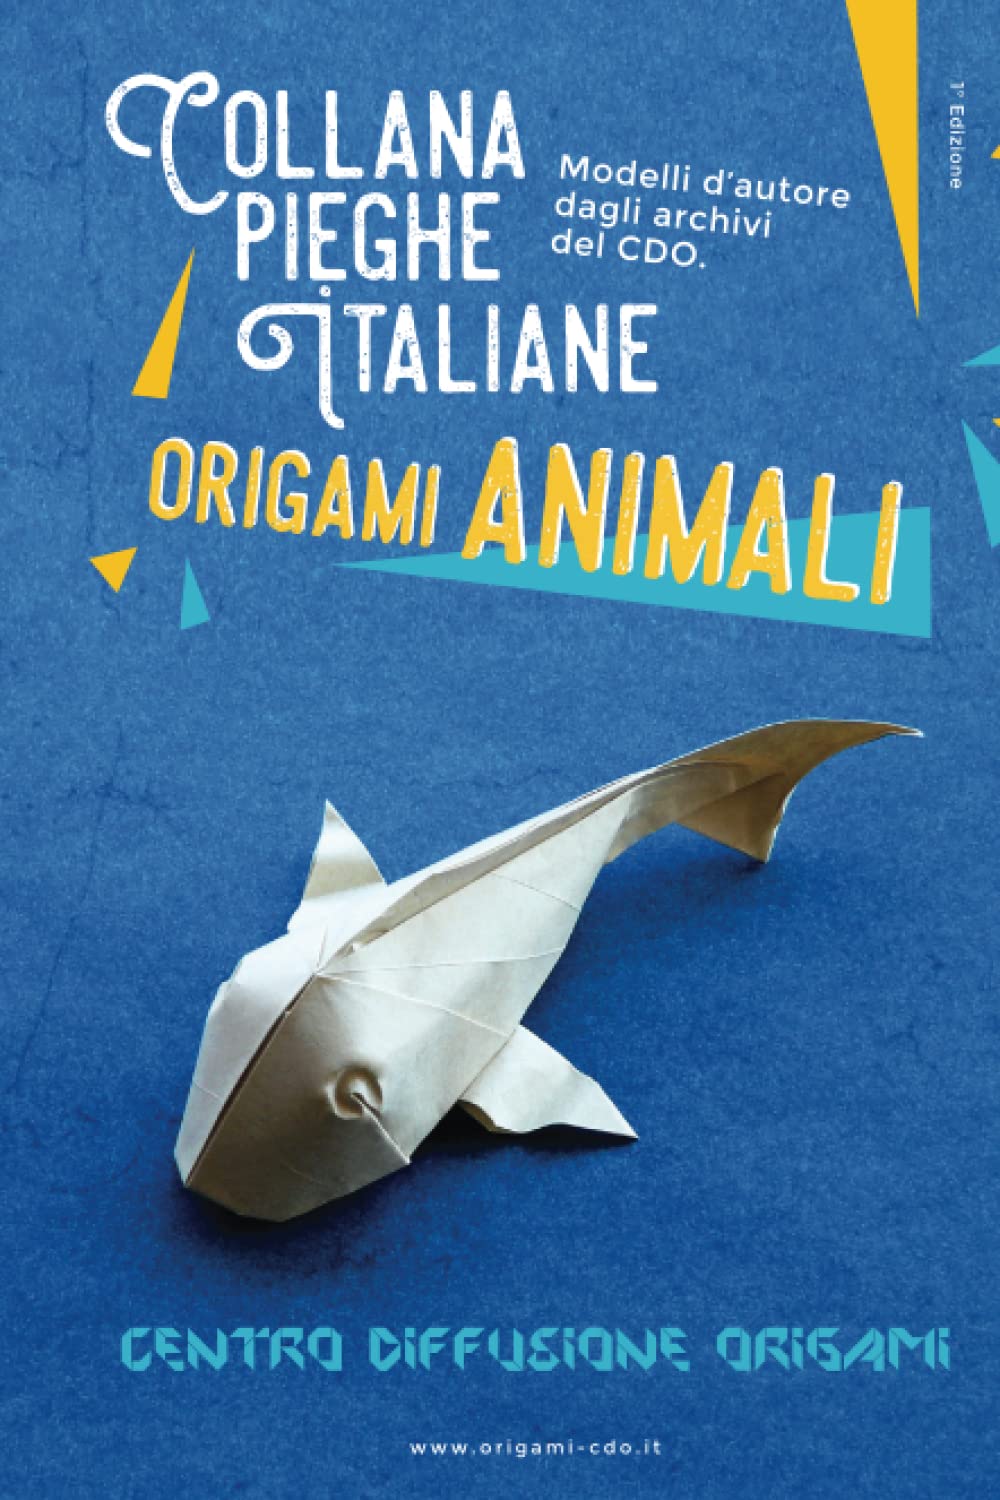 Collana pieghe Italiane - origami ANIMALI : page 108.